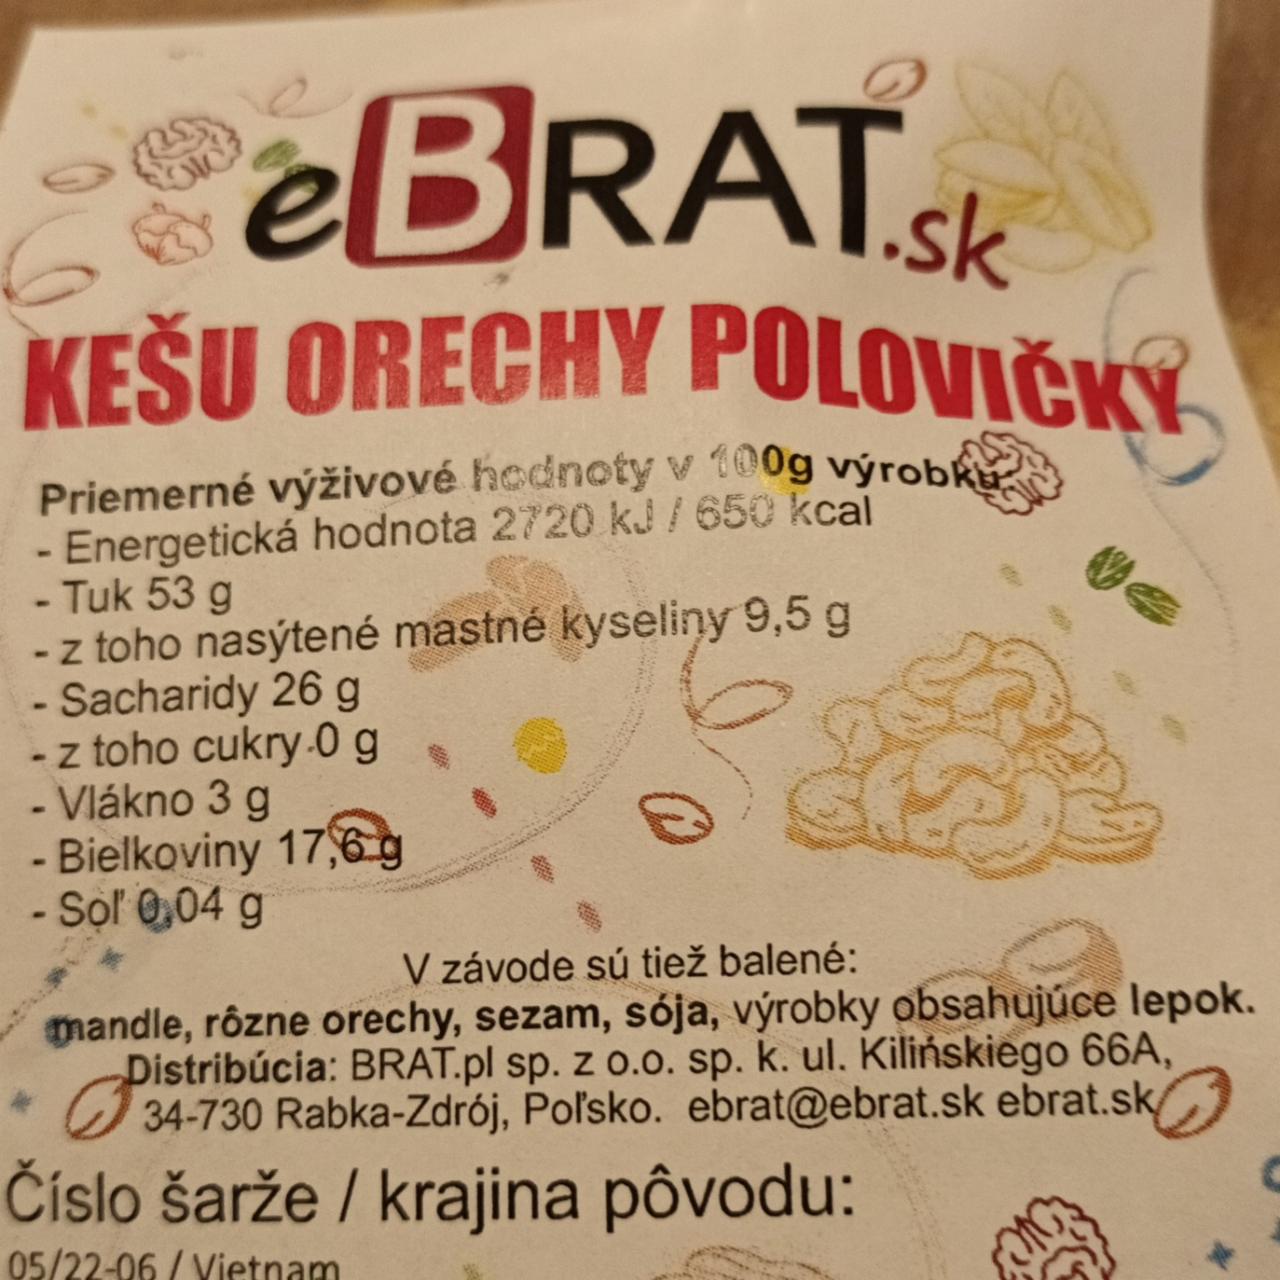 Fotografie - Kešu orechy polovičky eBrat.sk